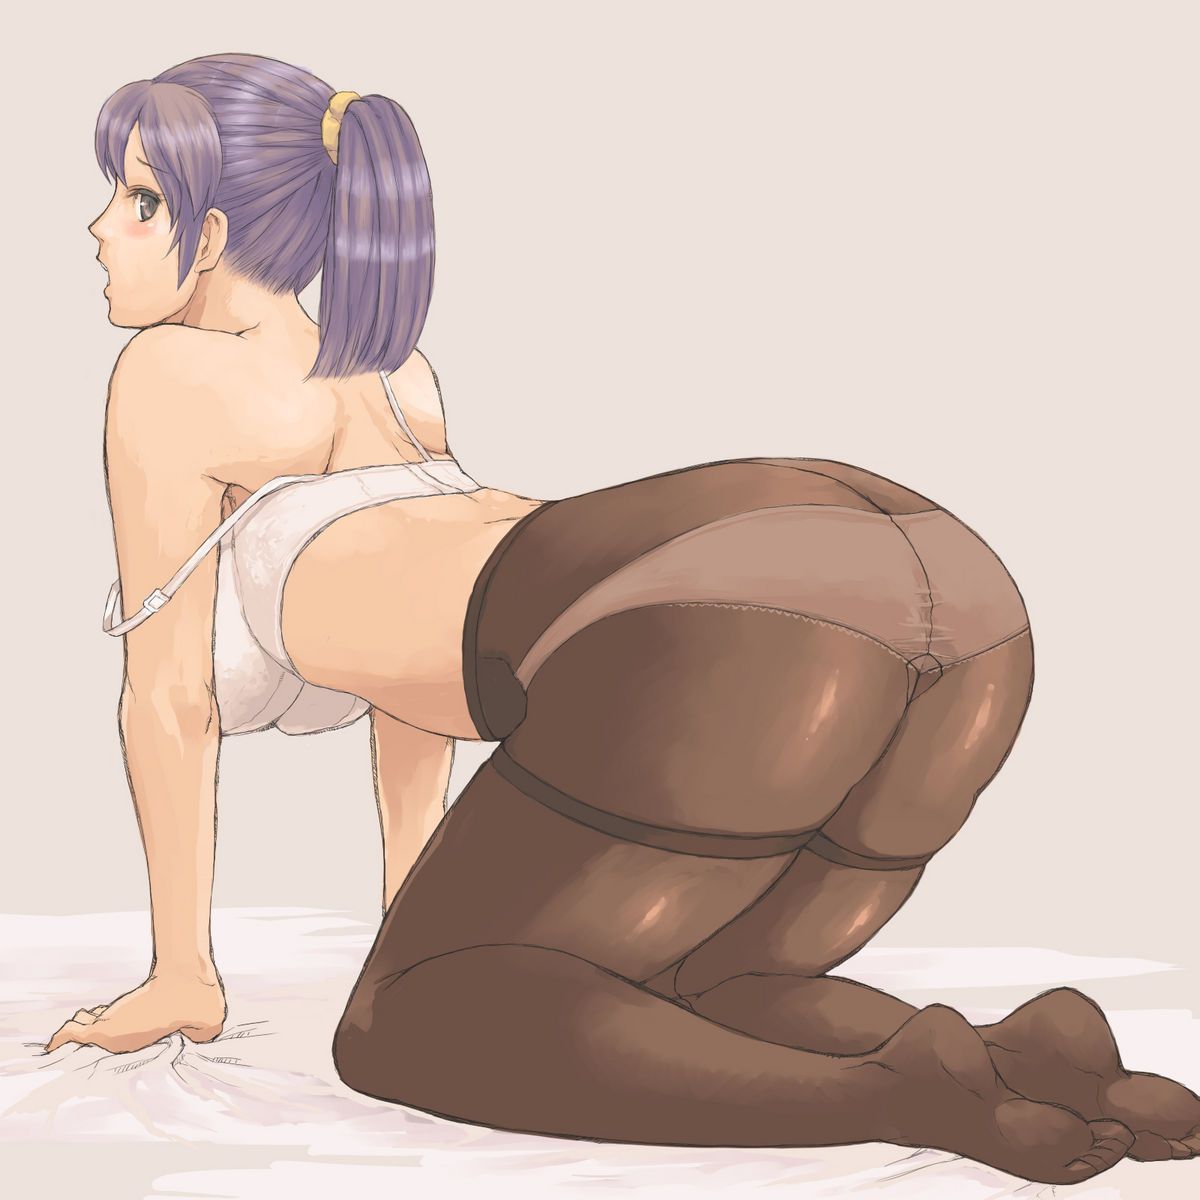 [2次] second erotic pictures of girl on all fours, nasty ass sticking out part 11 [butt] 24